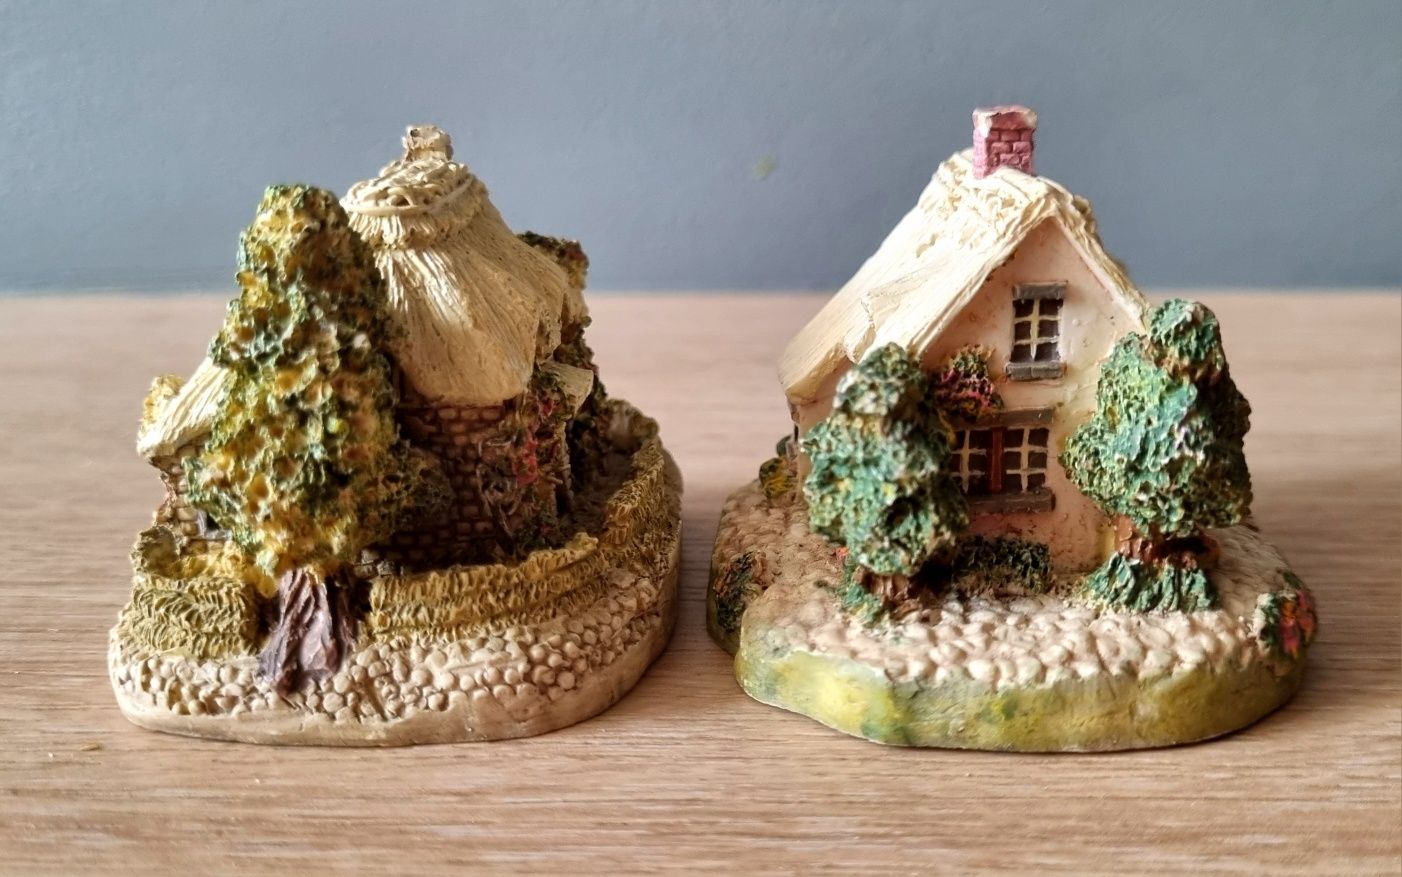 Zestaw kolekcjonerskich miniaturowych domków vintage firmy Leonardo